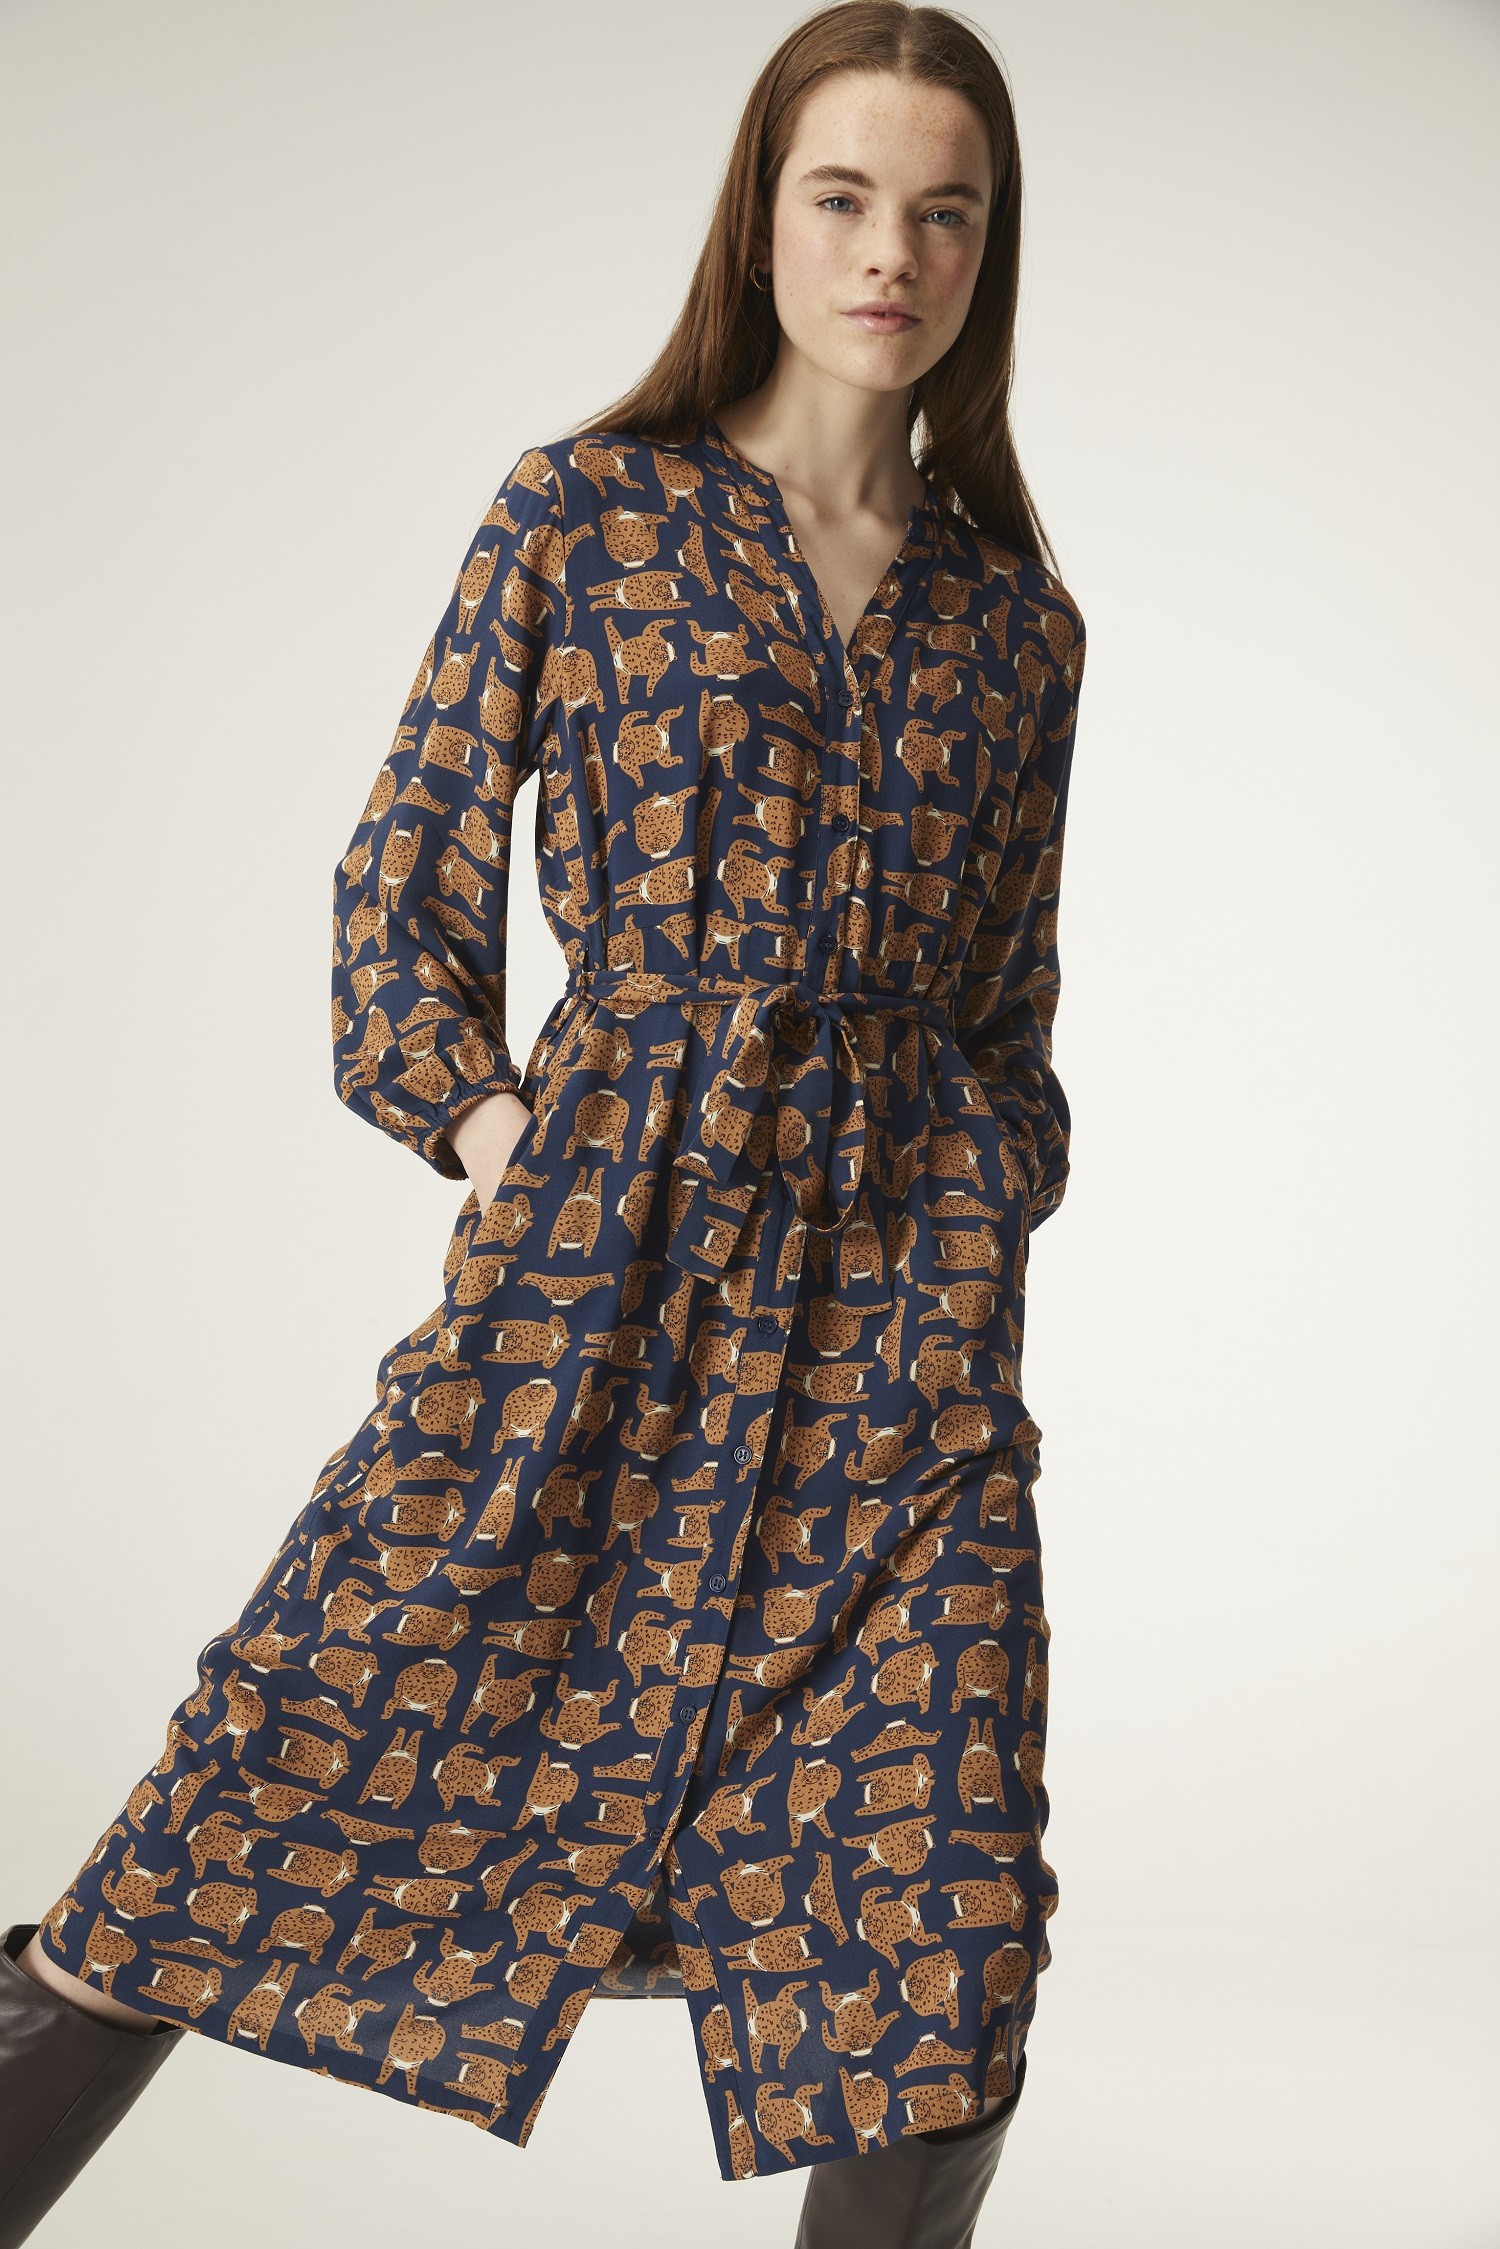 Φόρεμα με ζώνη και leopard print